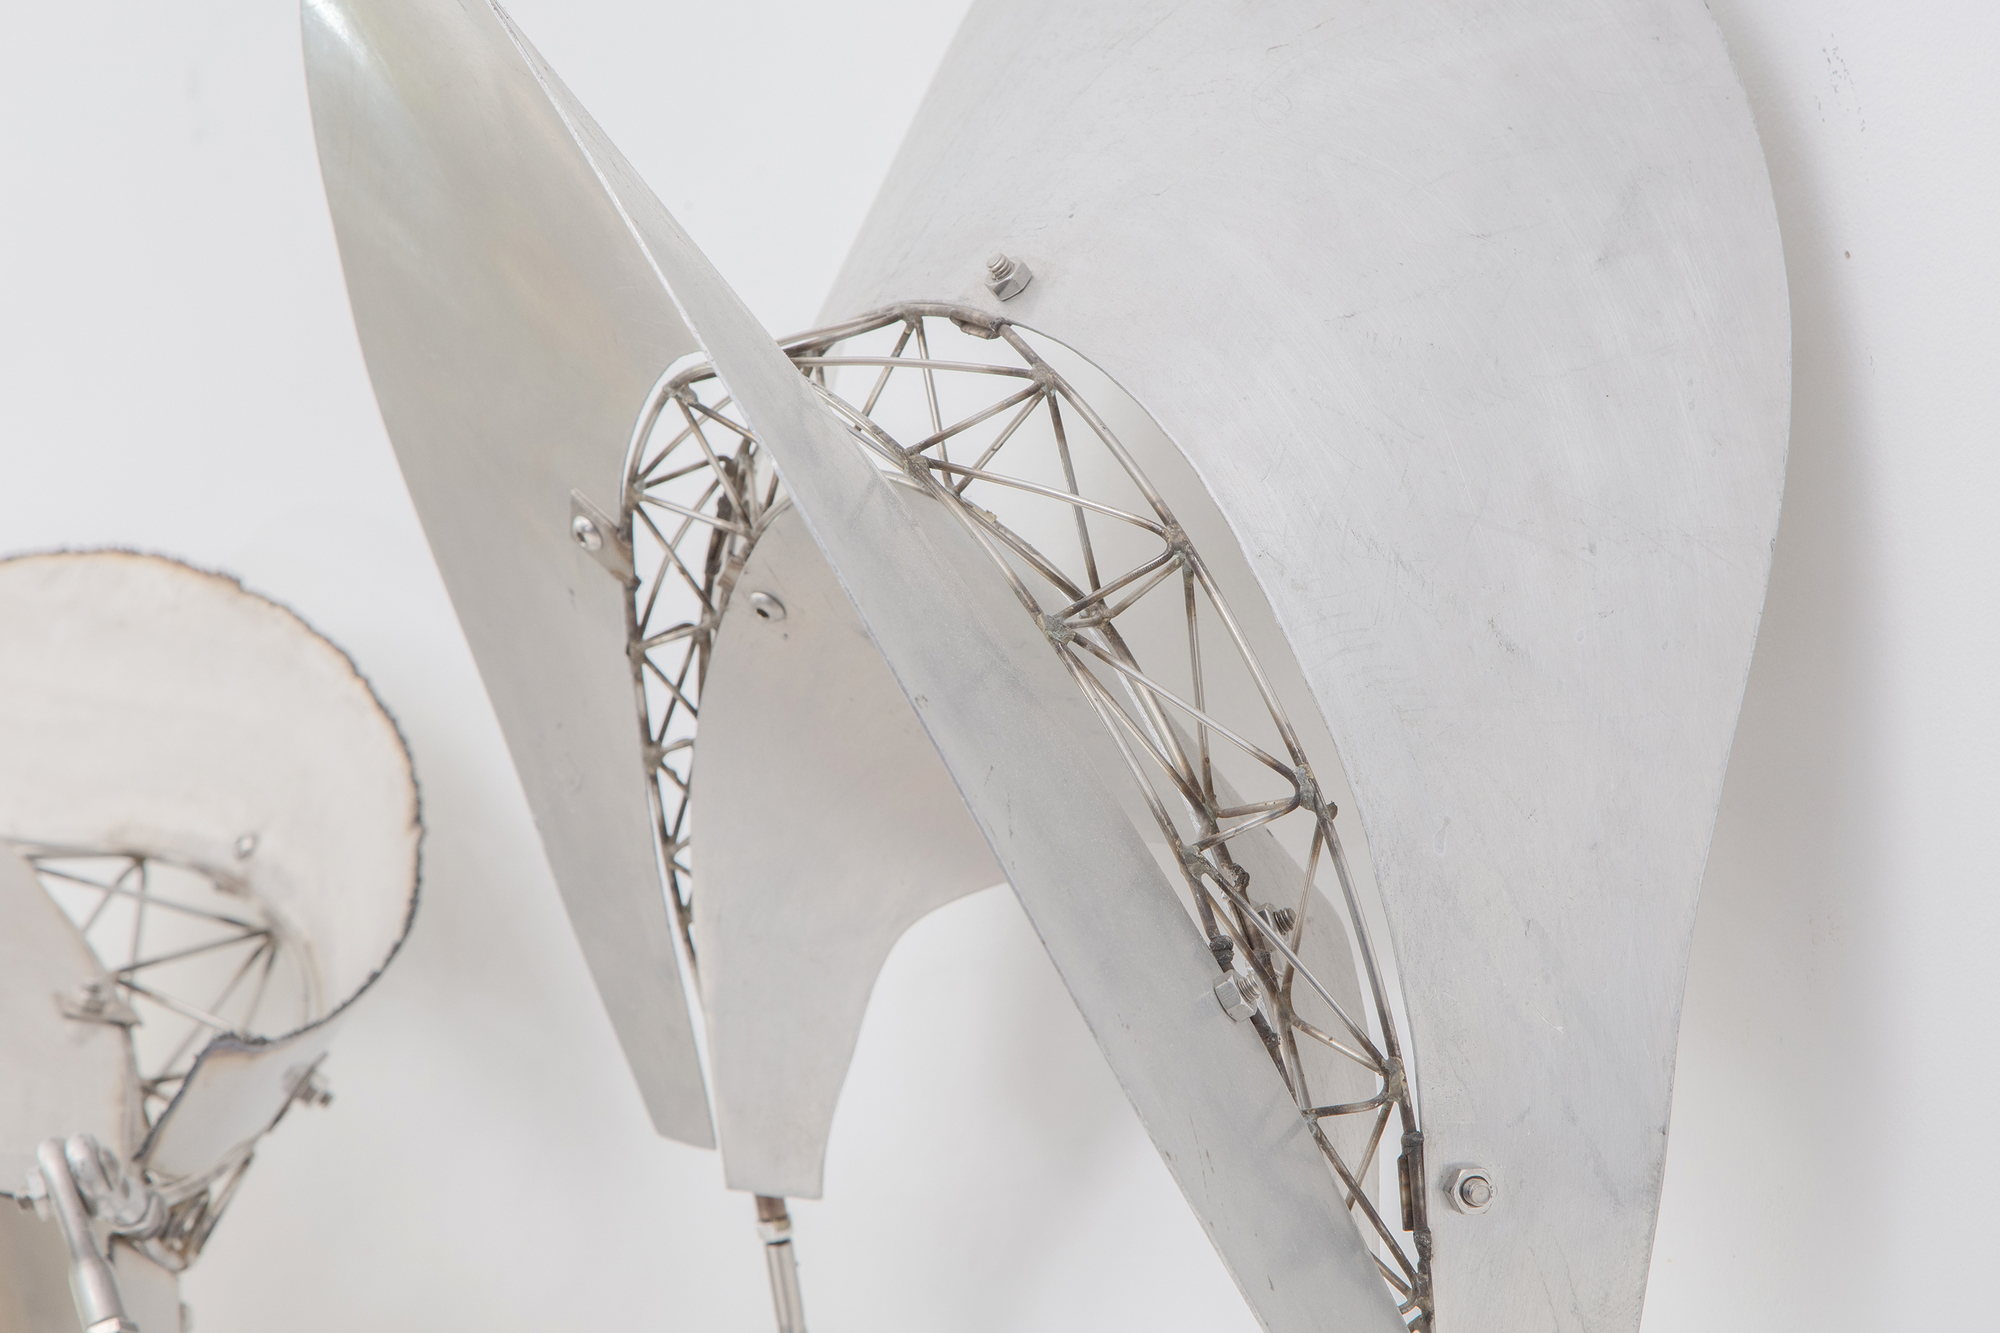 弗兰克-斯特拉（Frank Stella）的巴厘岛系列雕塑作品以浮动和流动的形式为特征，延伸至观者的空间，并邀请观者与其环境互动。在巴厘岛文化中，&quot;dadap &quot;是一种与生长和仪式意义相关的树木，它反映了斯特拉雕塑的有机和动态性质。斯特拉将竹子改用不锈钢和铝材，保留了巴厘岛美学的本质，即推崇有机、流动、动态地与空间互动的形式。Dadap 展示了斯特拉主题探索的连续性，其作品的精神超越了材料。金属具有不同的质感、反射性以及与光线和空间的互动性，但它坚持运动和互动的原则。这是形式和概念在不同媒介间的创造性转换，既保留了最初灵感的精神，又允许新材料的特性在全新的语境中表达这些想法。